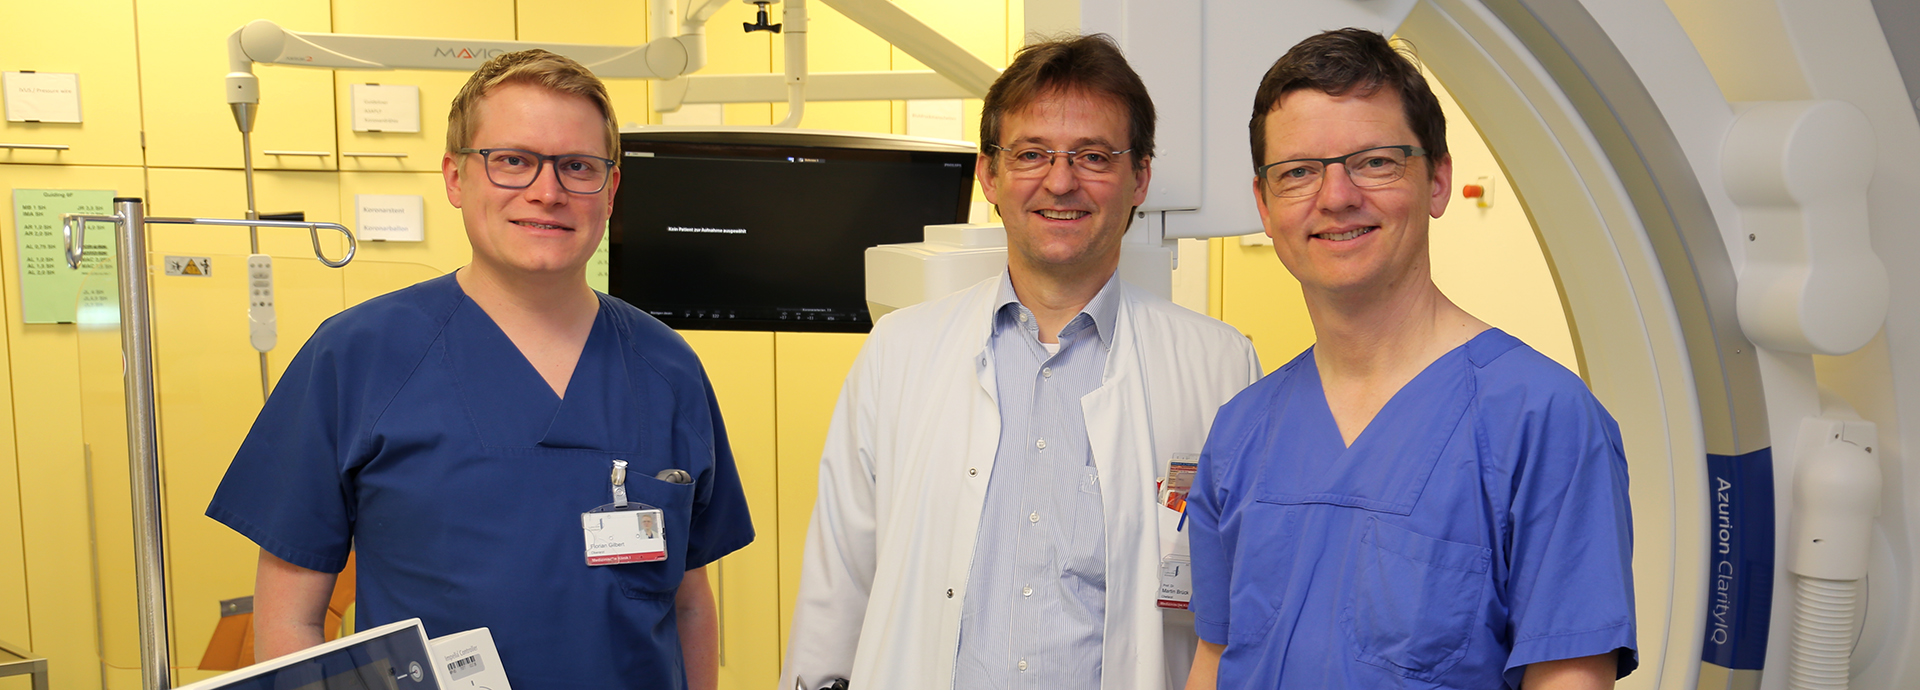 Das verantwortliche Kardiologen-Team von links nach rechts: Oberarzt Florian Gilbert, Chefarzt Professor Dr. Martin Brück und der leitende Oberarzt Thorsten Runde